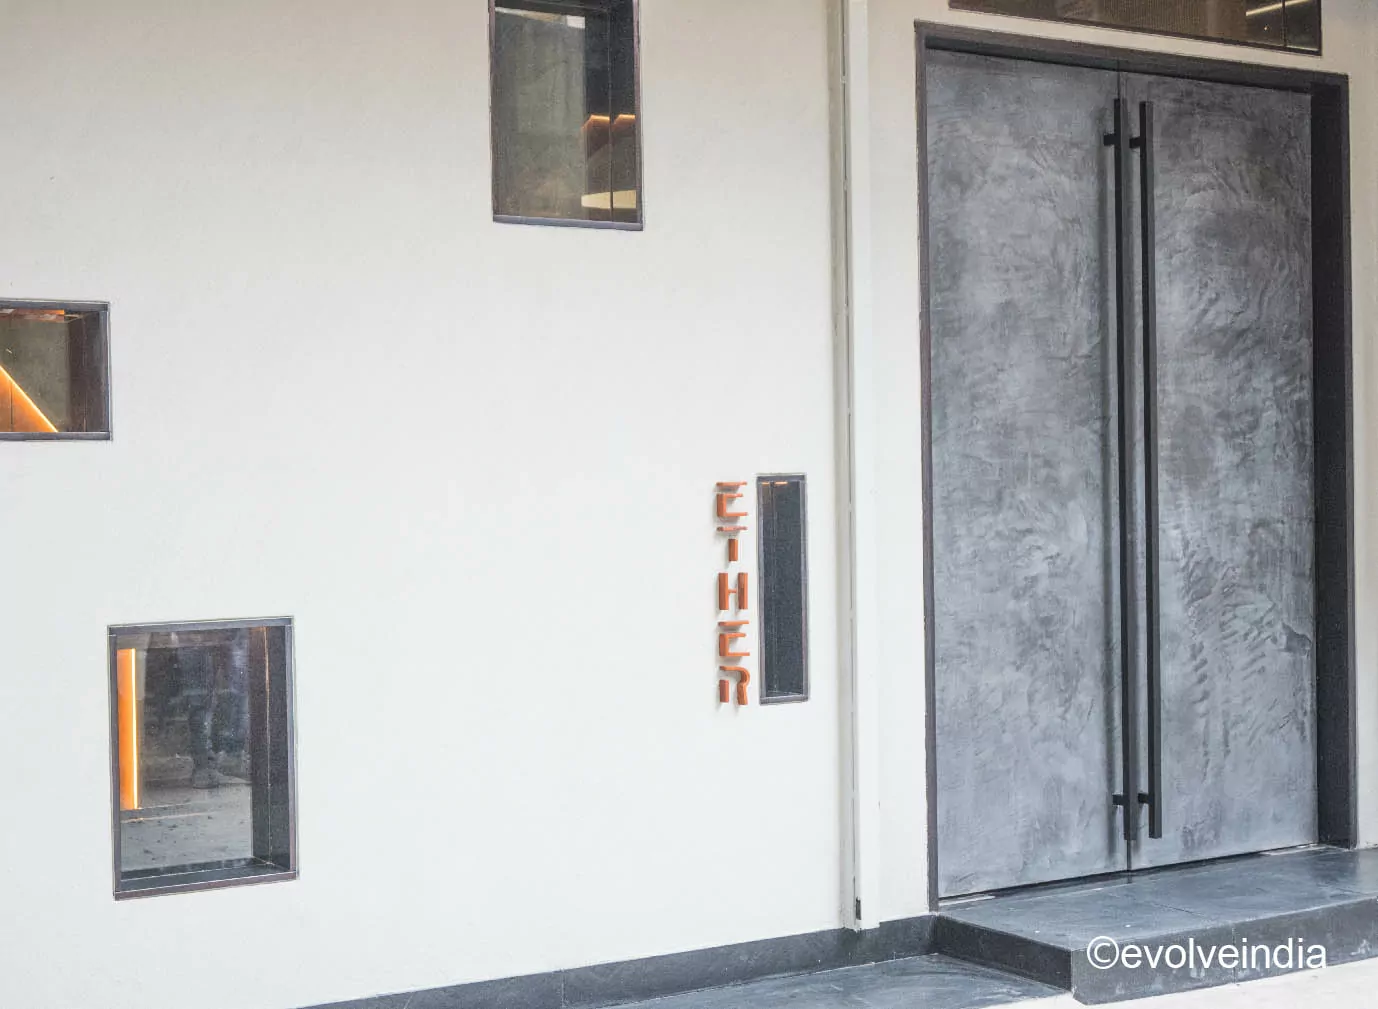 Door designed with Evolve India’s decorative concrete finish